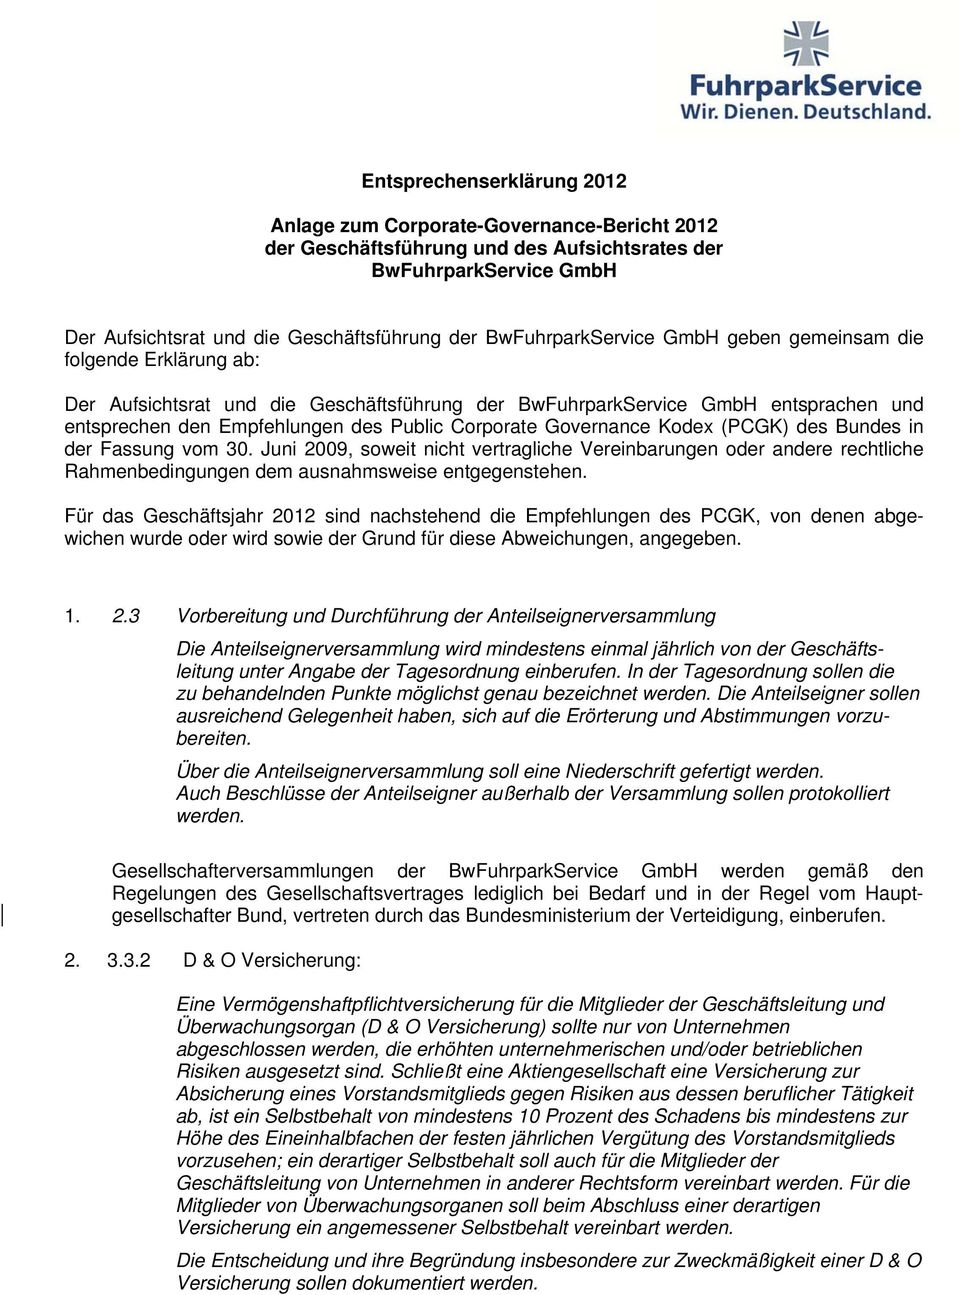 Corporate Governance Kodex (PCGK) des Bundes in der Fassung vom 30. Juni 2009, soweit nicht vertragliche Vereinbarungen oder andere rechtliche Rahmenbedingungen dem ausnahmsweise entgegenstehen.